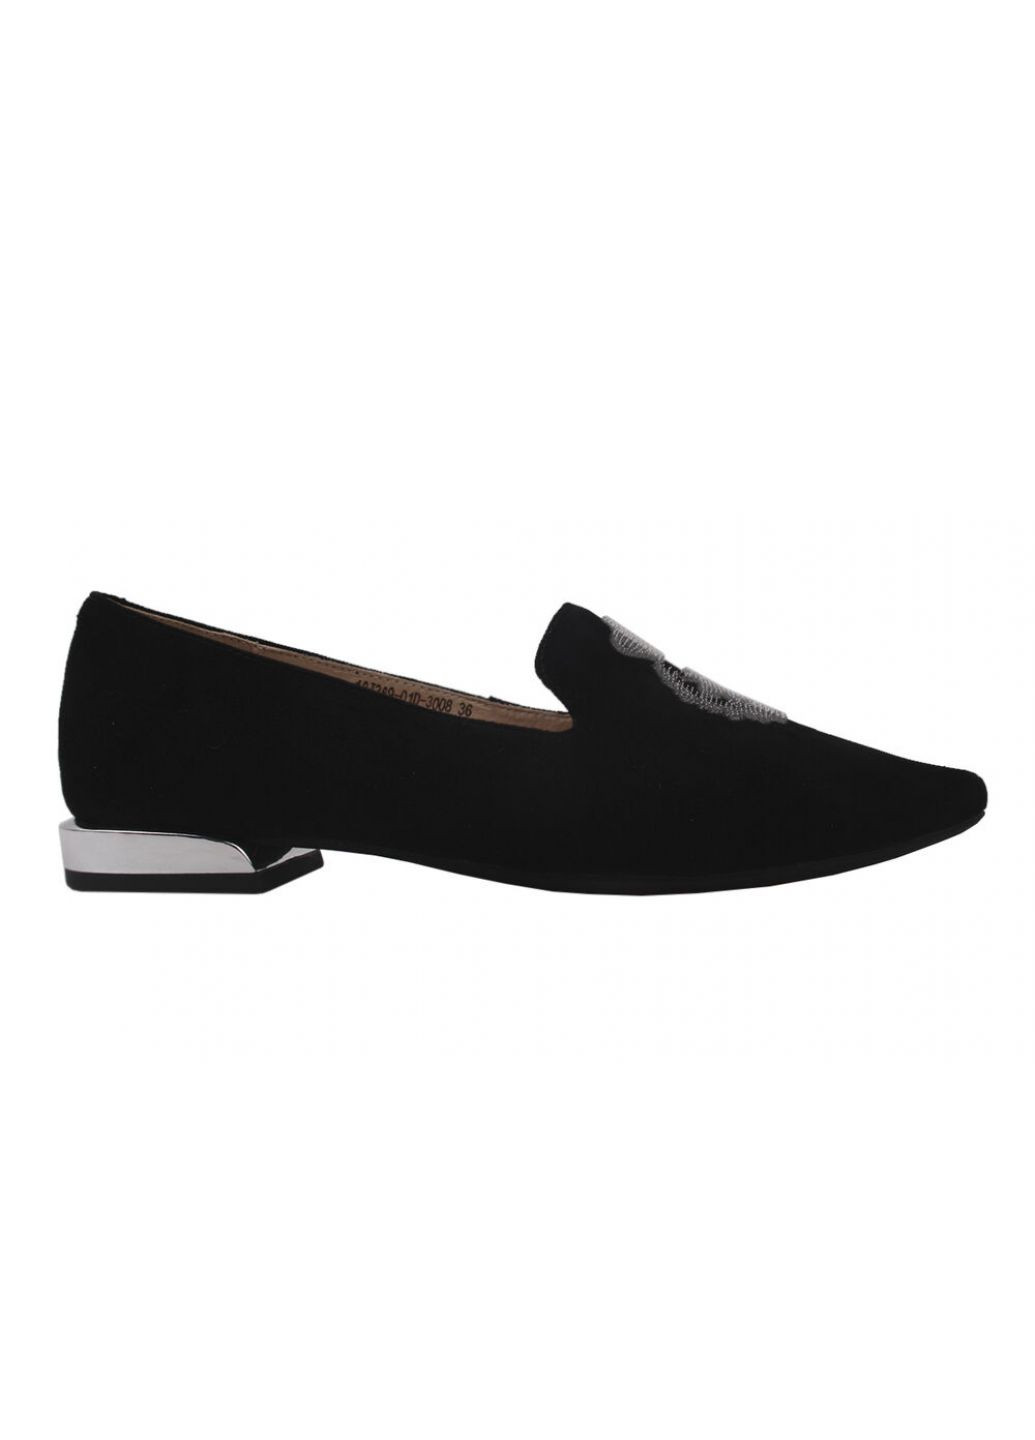 Туфли на низком ходу женские натуральная замша, цвет черный Lady Marcia